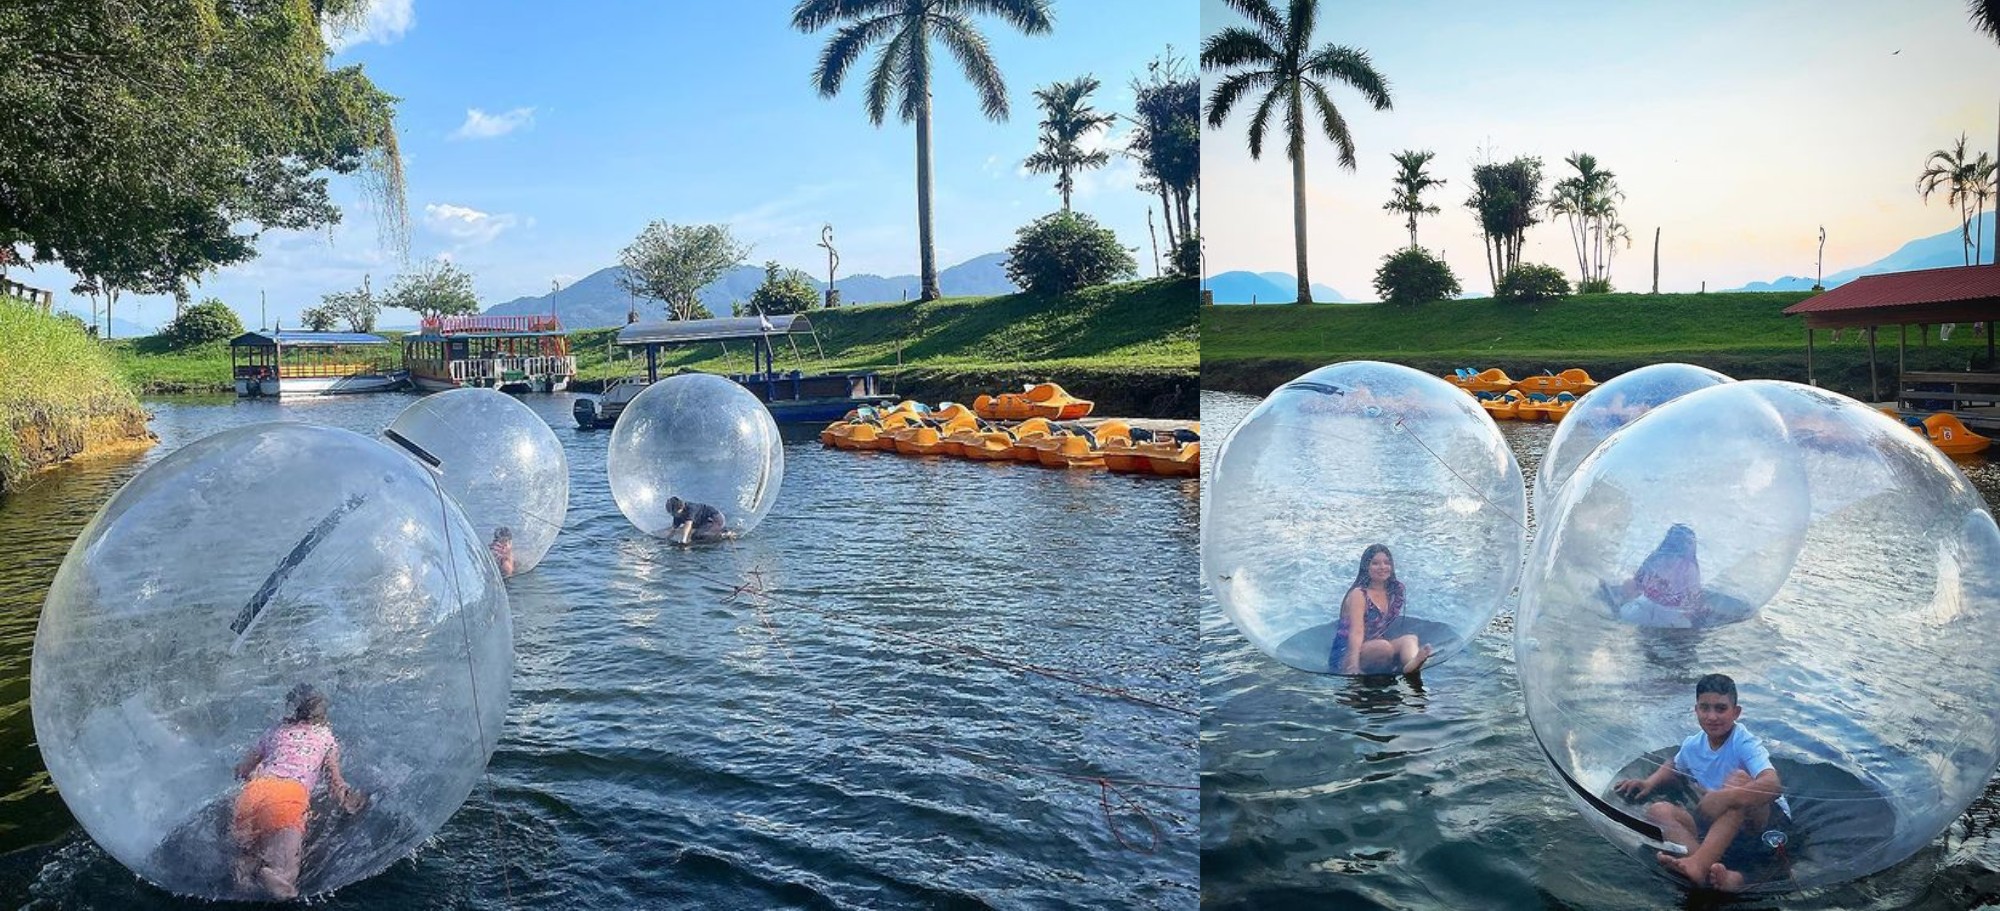 Burbujas del Lago: una nueva atracción en el Lago de Yojoa